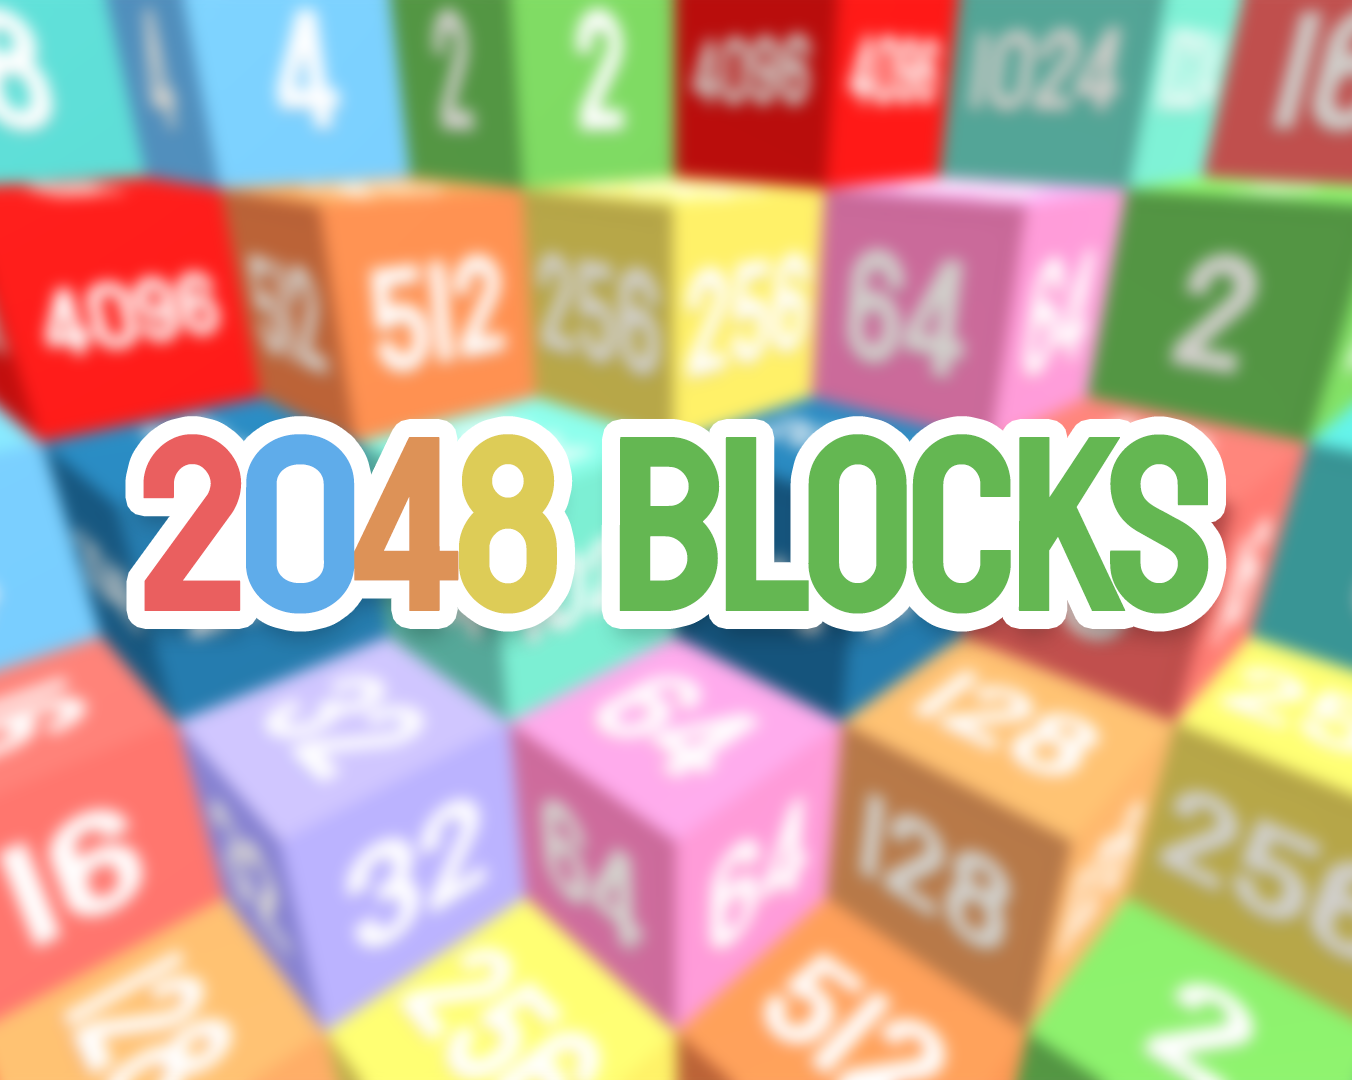 2048 Blocks by Lekrkoekj